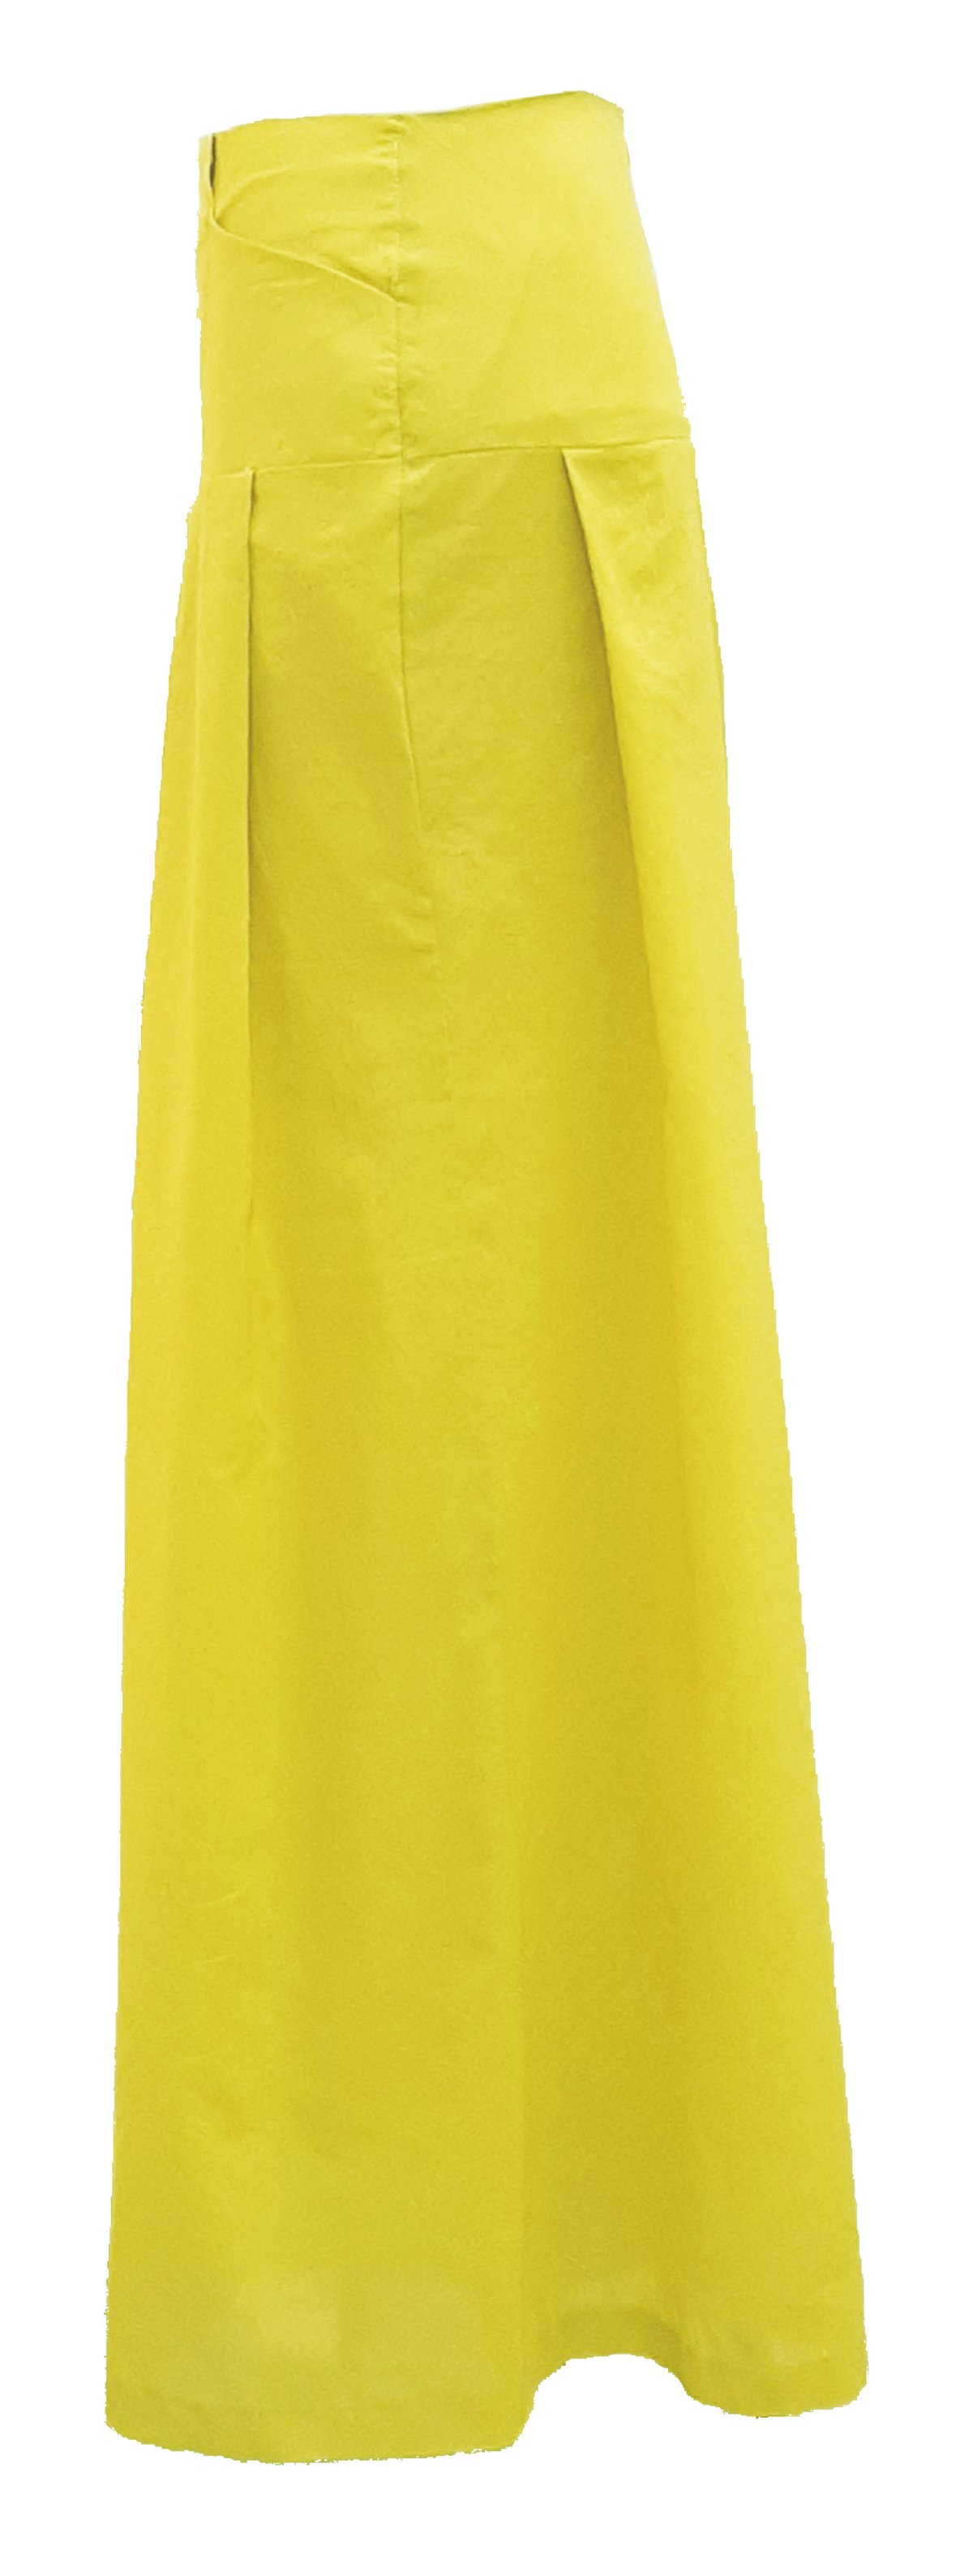 Image of Karacha pants in Yellow